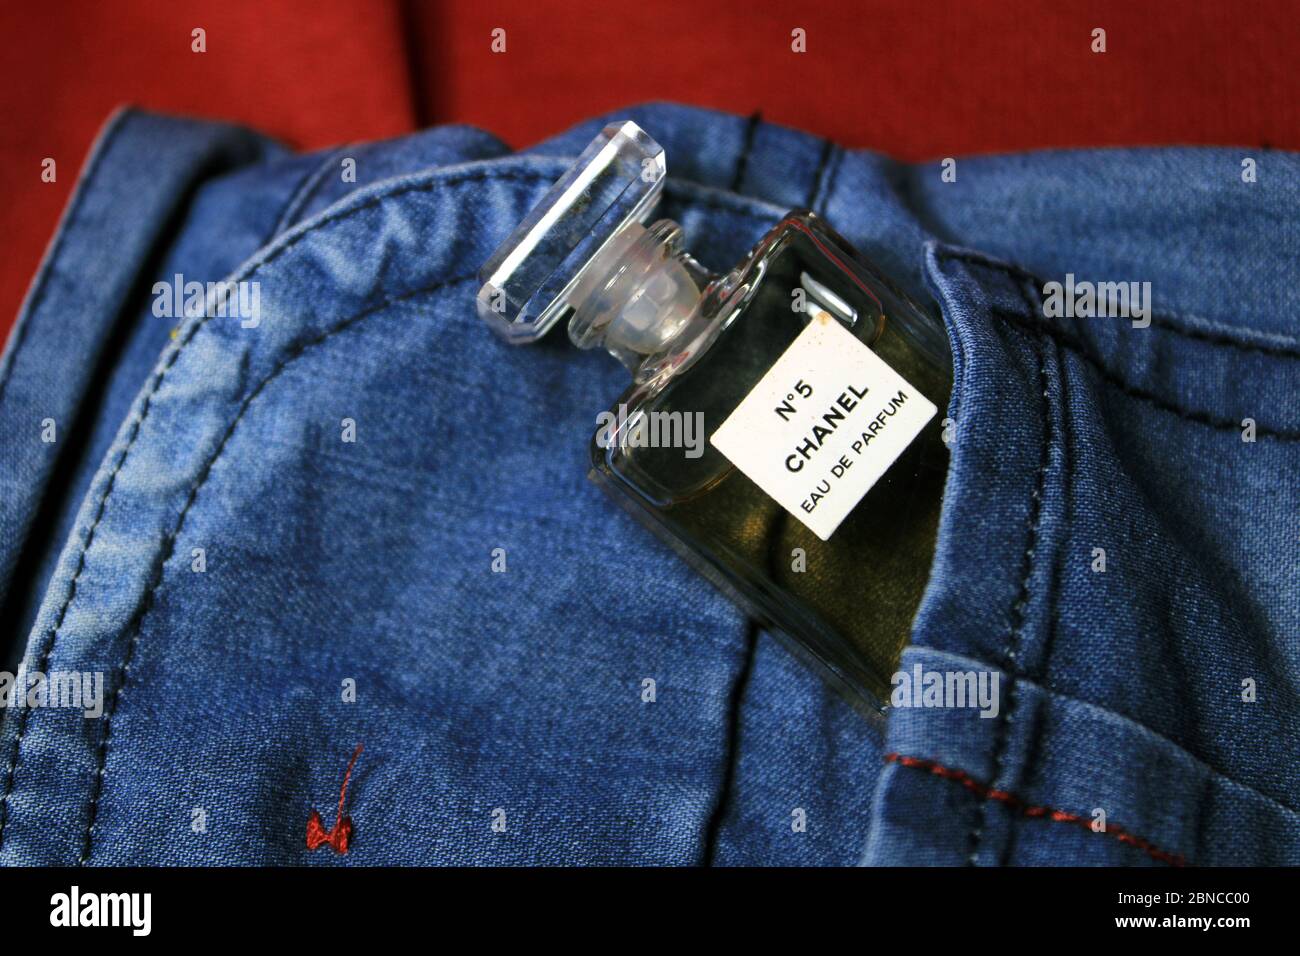 Paris, France le 13 mai 2020 : bouteilles de parfum Chanel dans une poche de jeans bleus. Parfum français. Banque D'Images